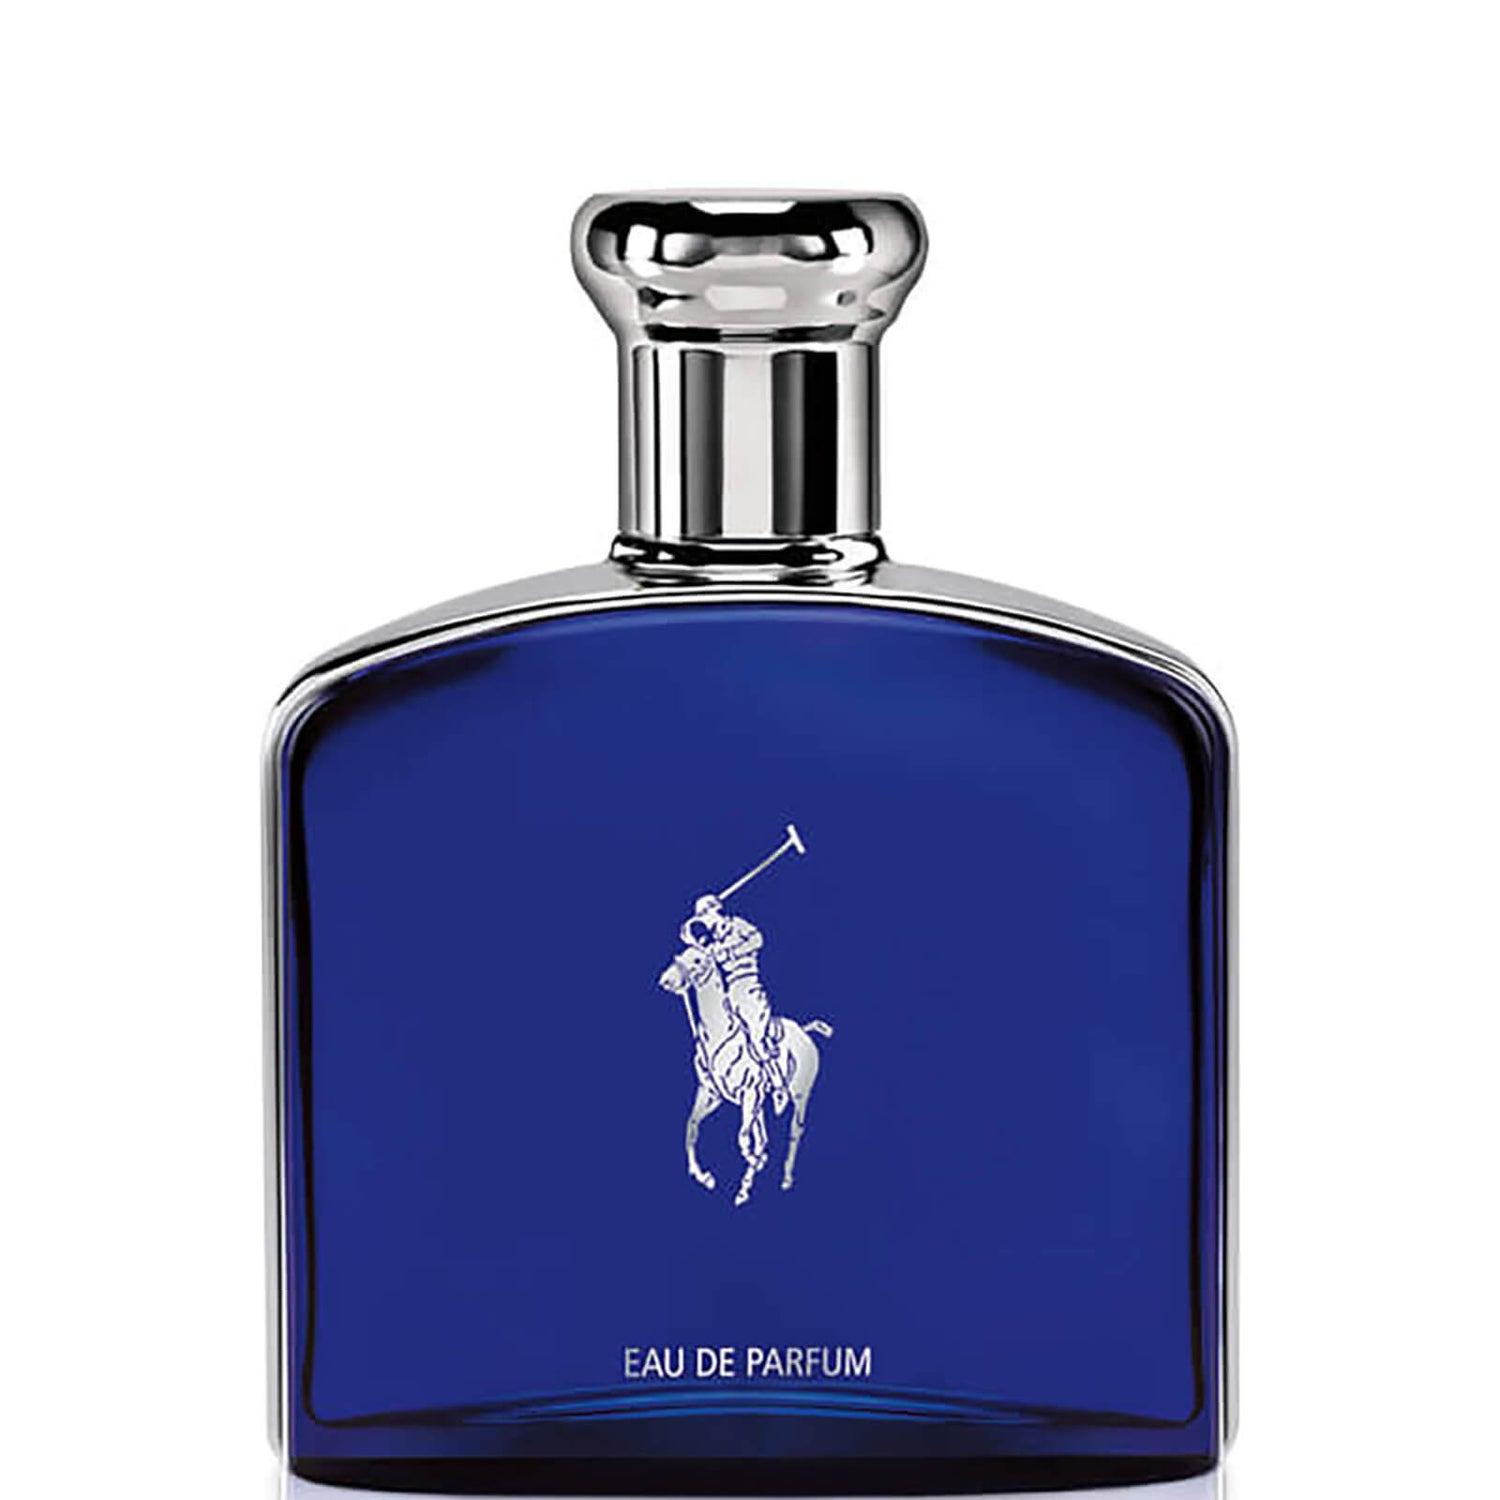 Ralph Lauren Polo Blue Eau de Parfum - 75 ml